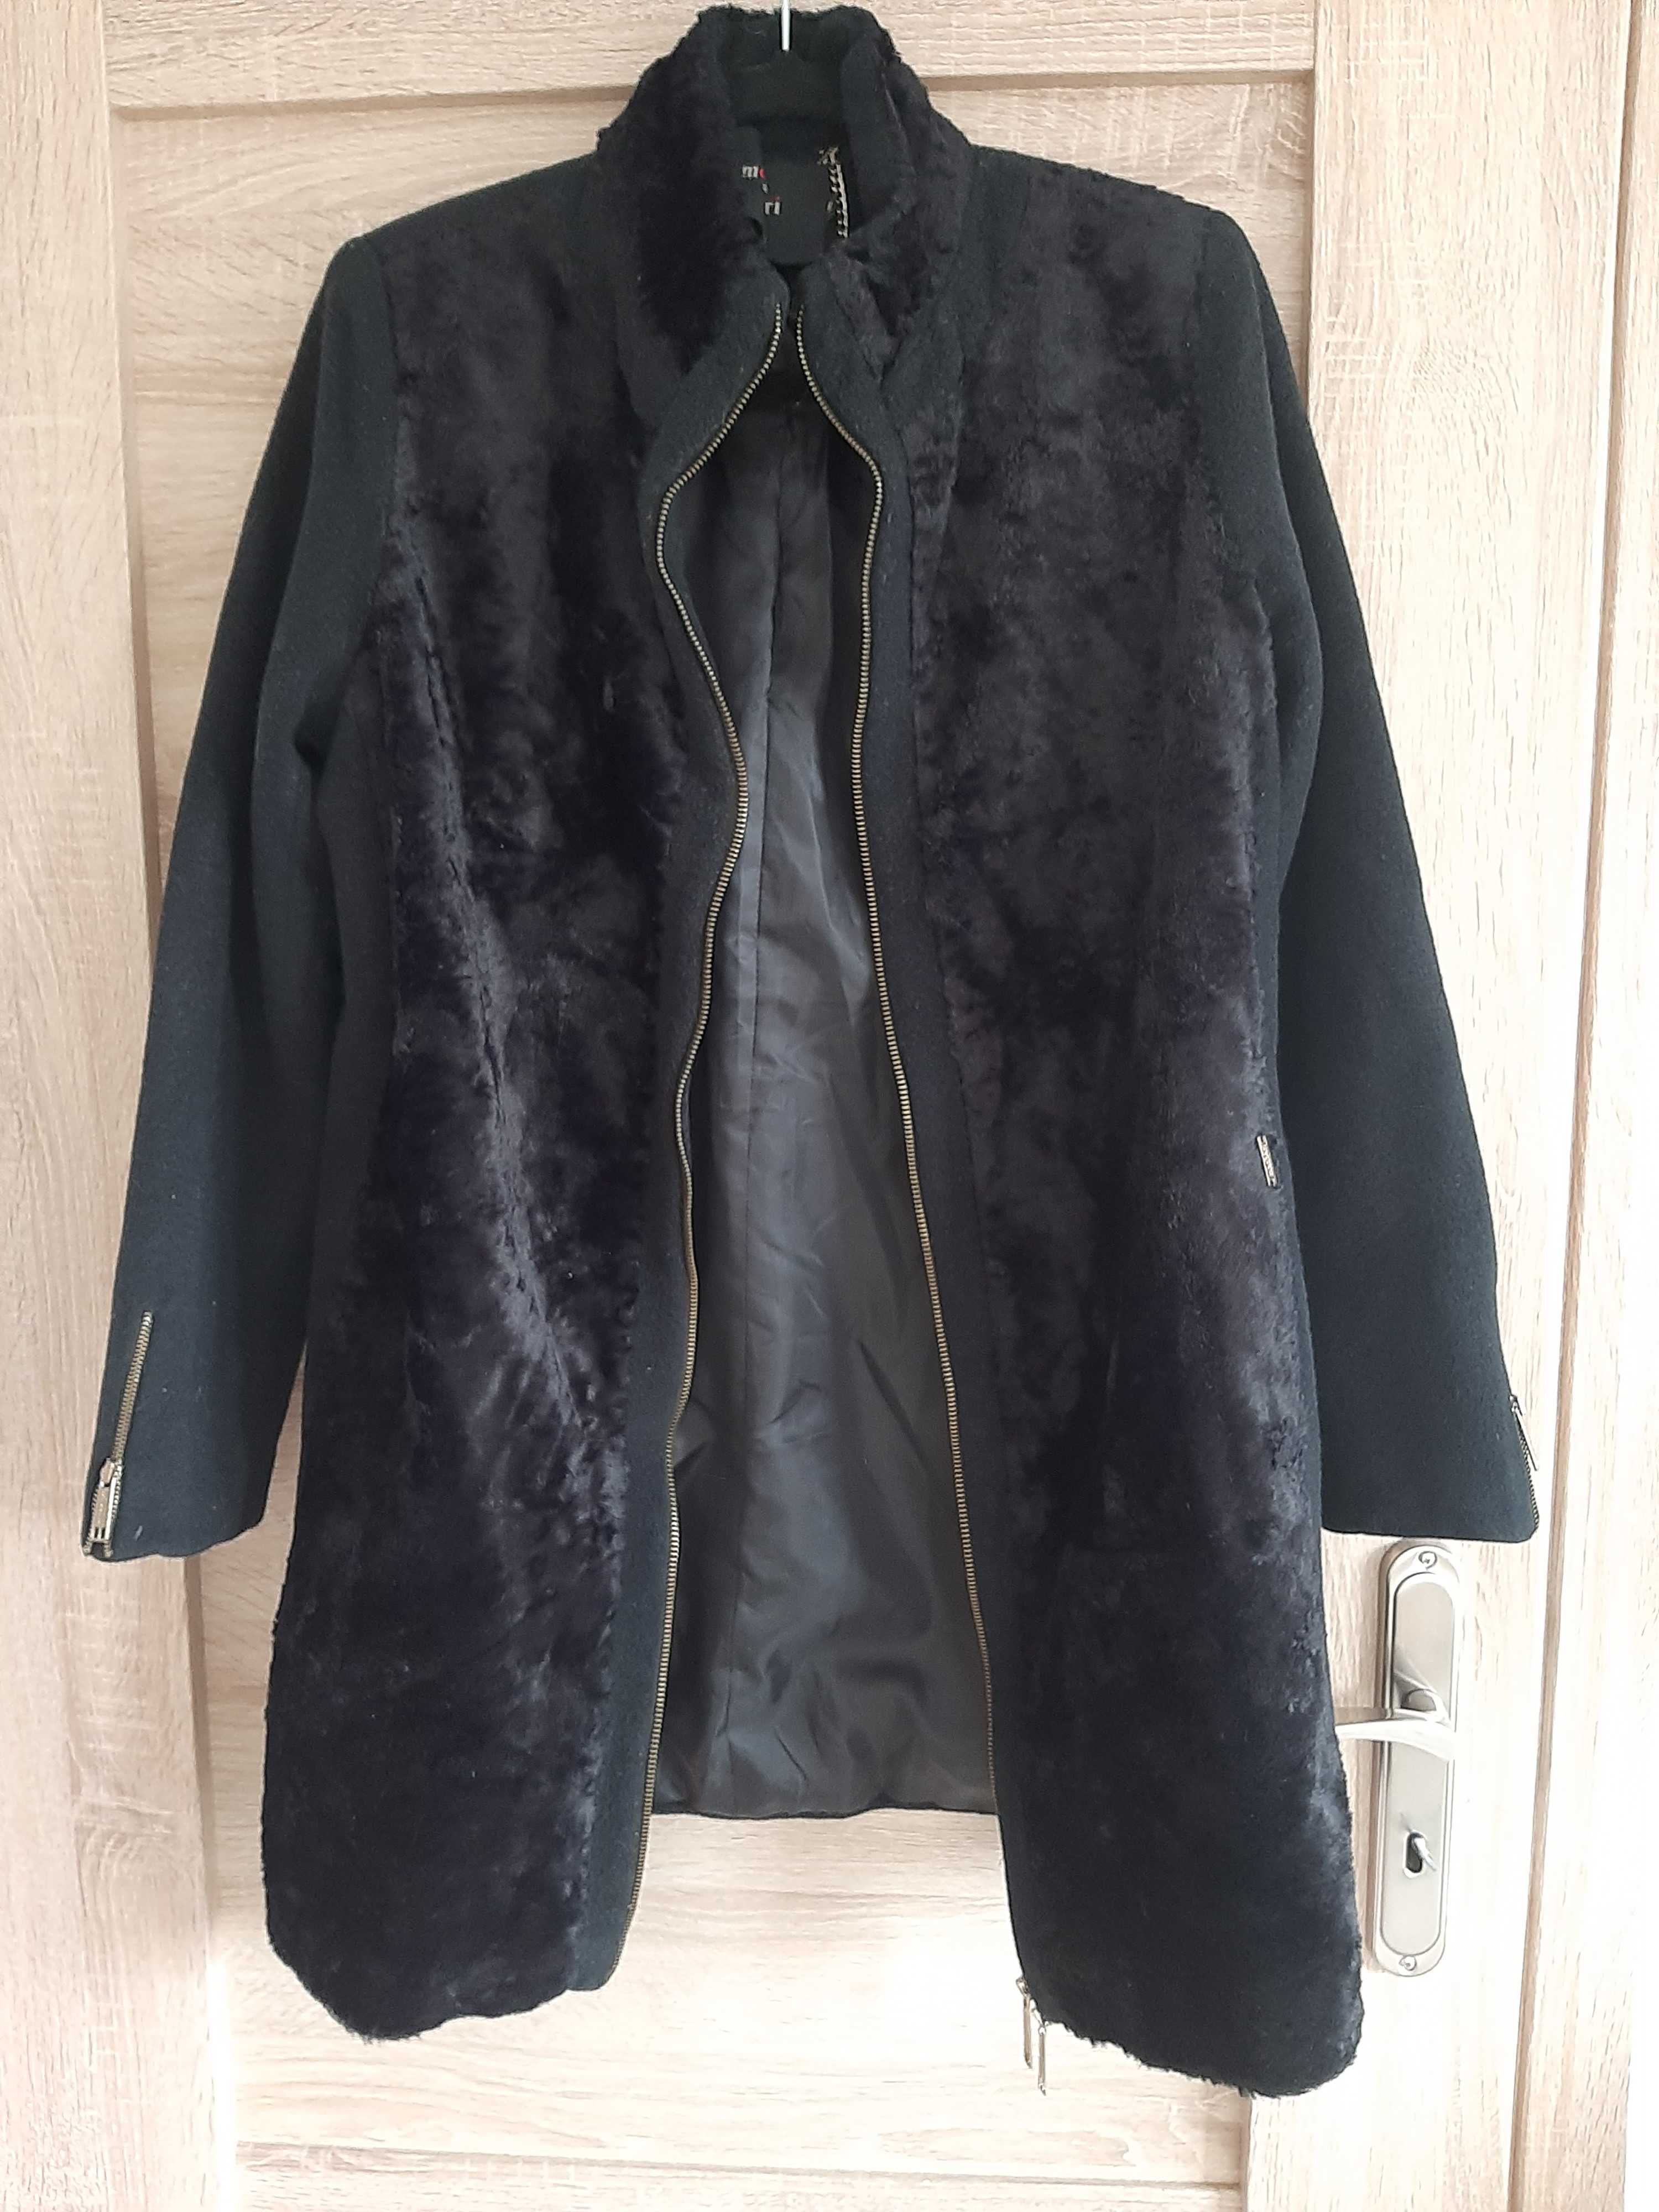 Czarny płaszcz Monnari, wełniany 80%, r.38 miś